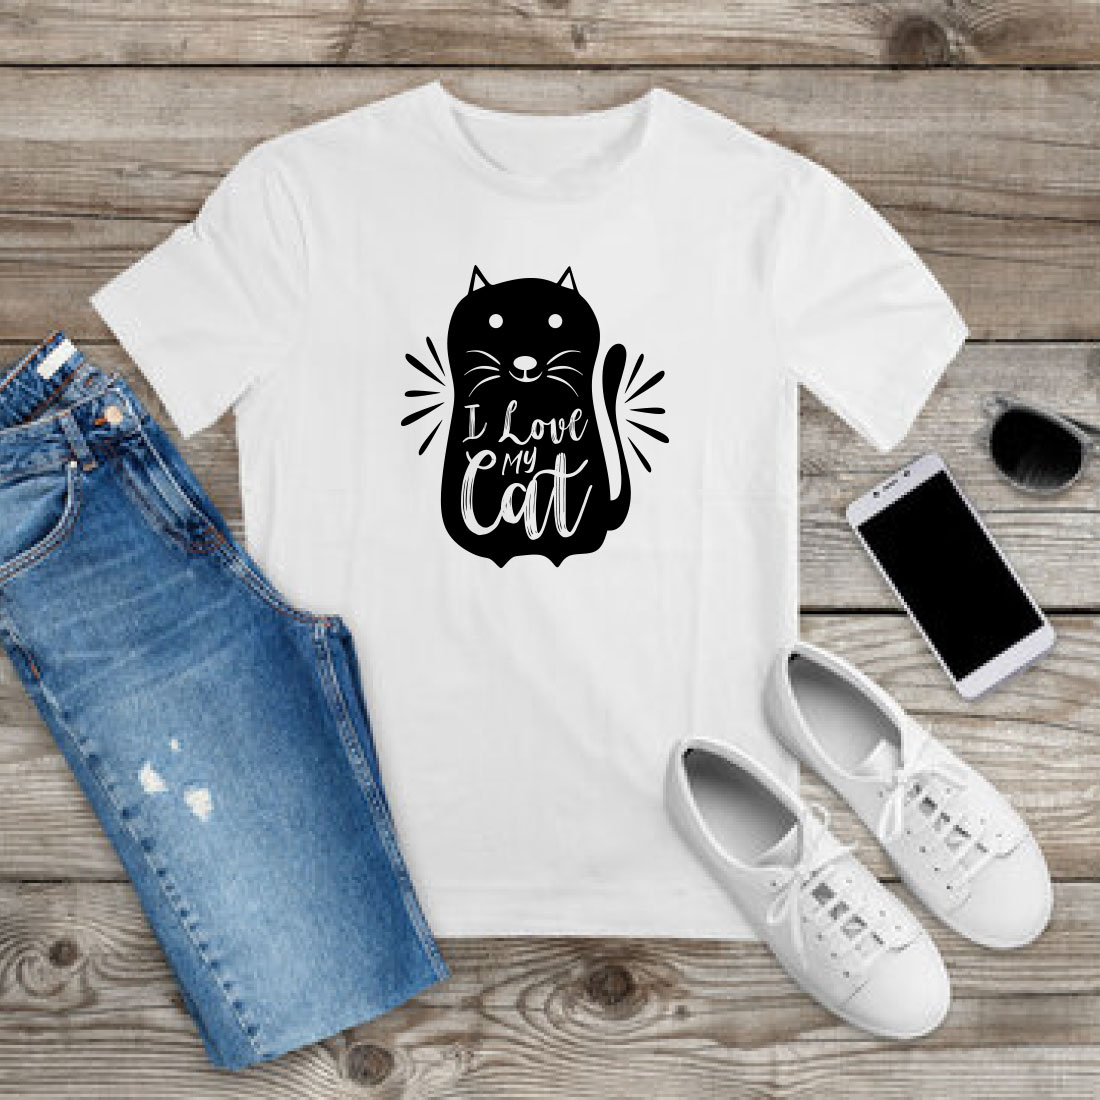 Cat T-shirt Design Bundle Vol-14 preview image.